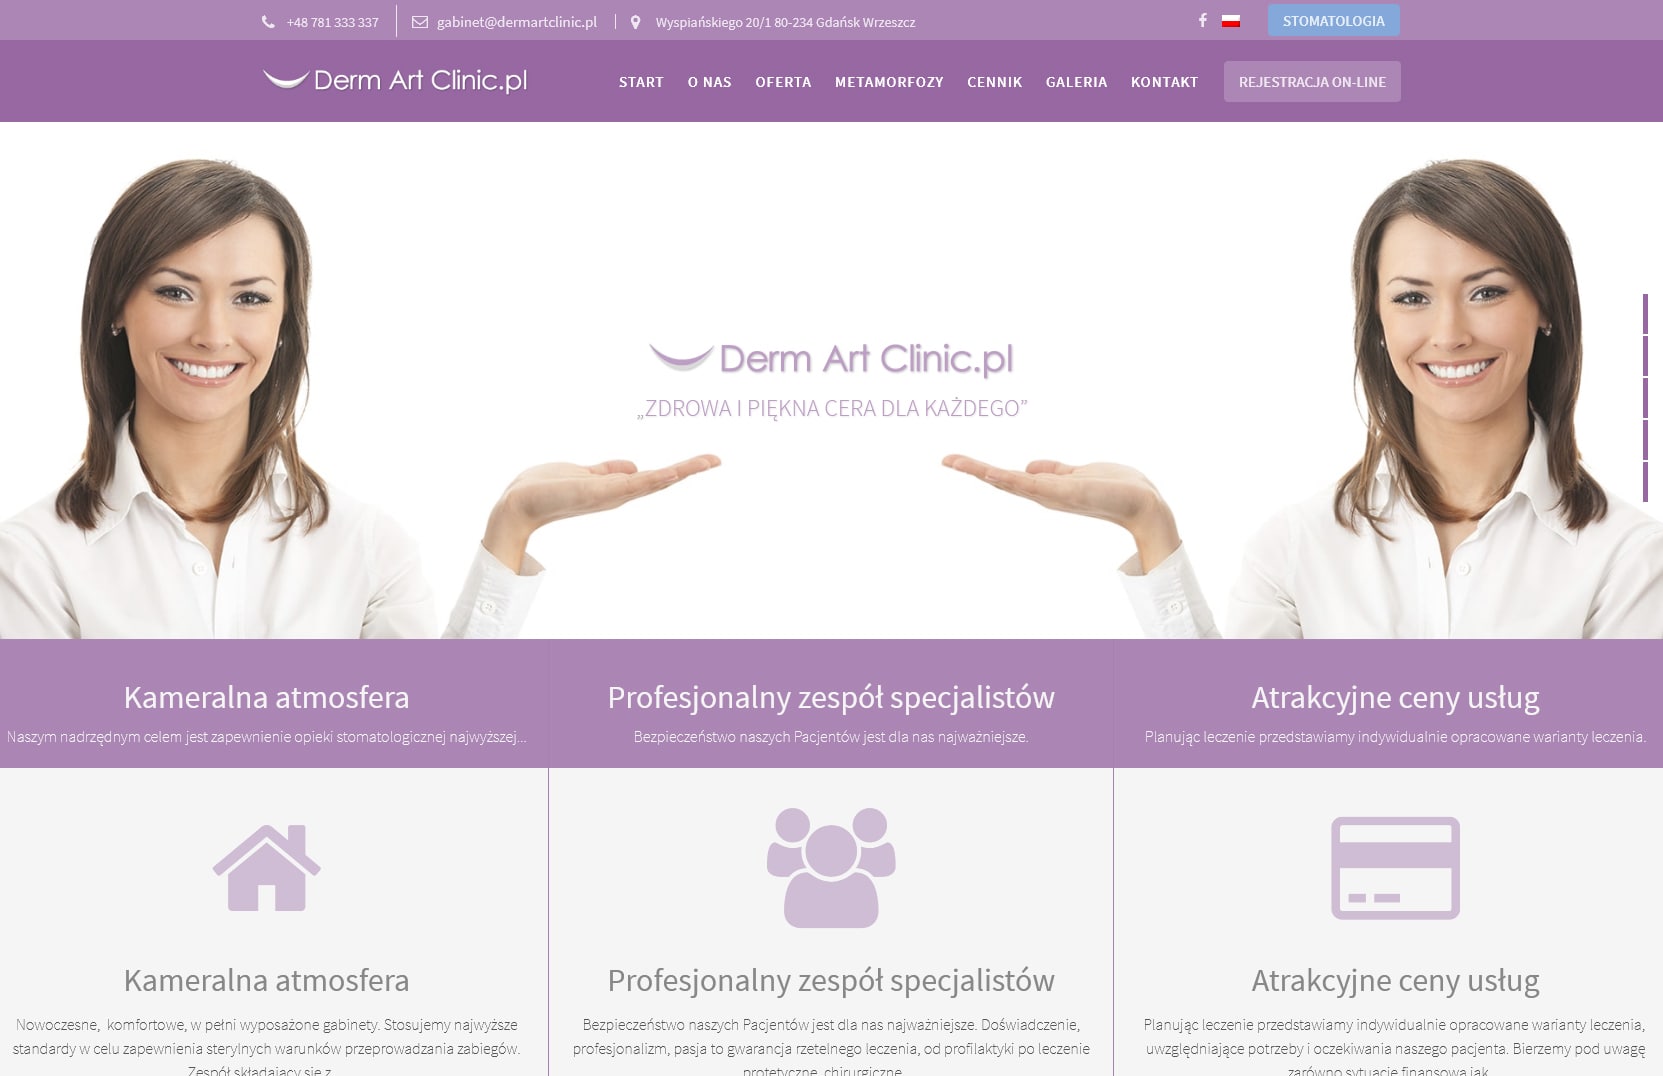 Strona internetowa gabinetu medycyny estetycznej z Gdańska Wrzeszcza.